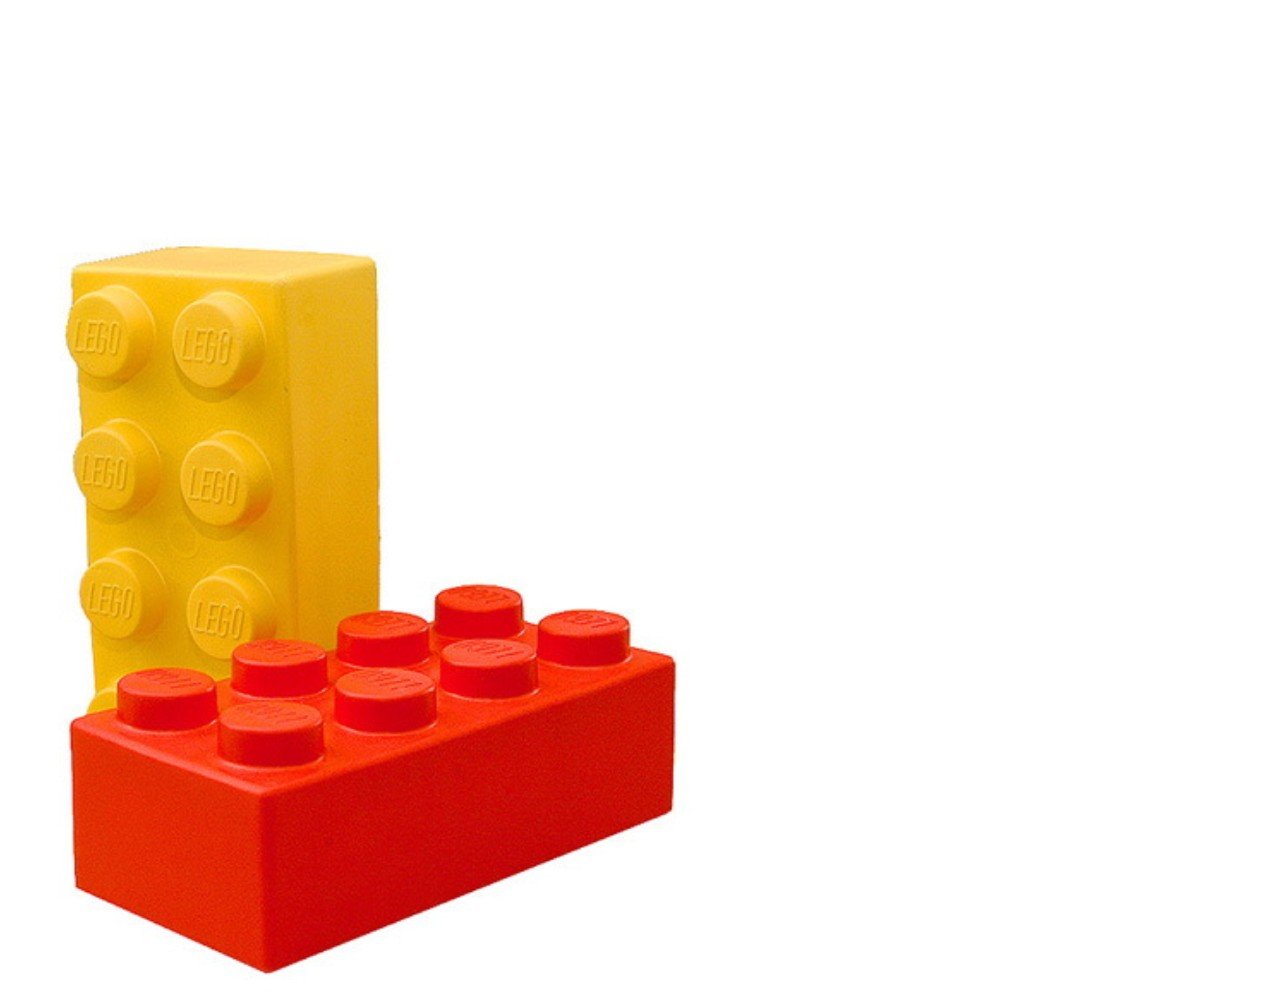 LEGO Brick Wallpaper - WallpaperSafari.